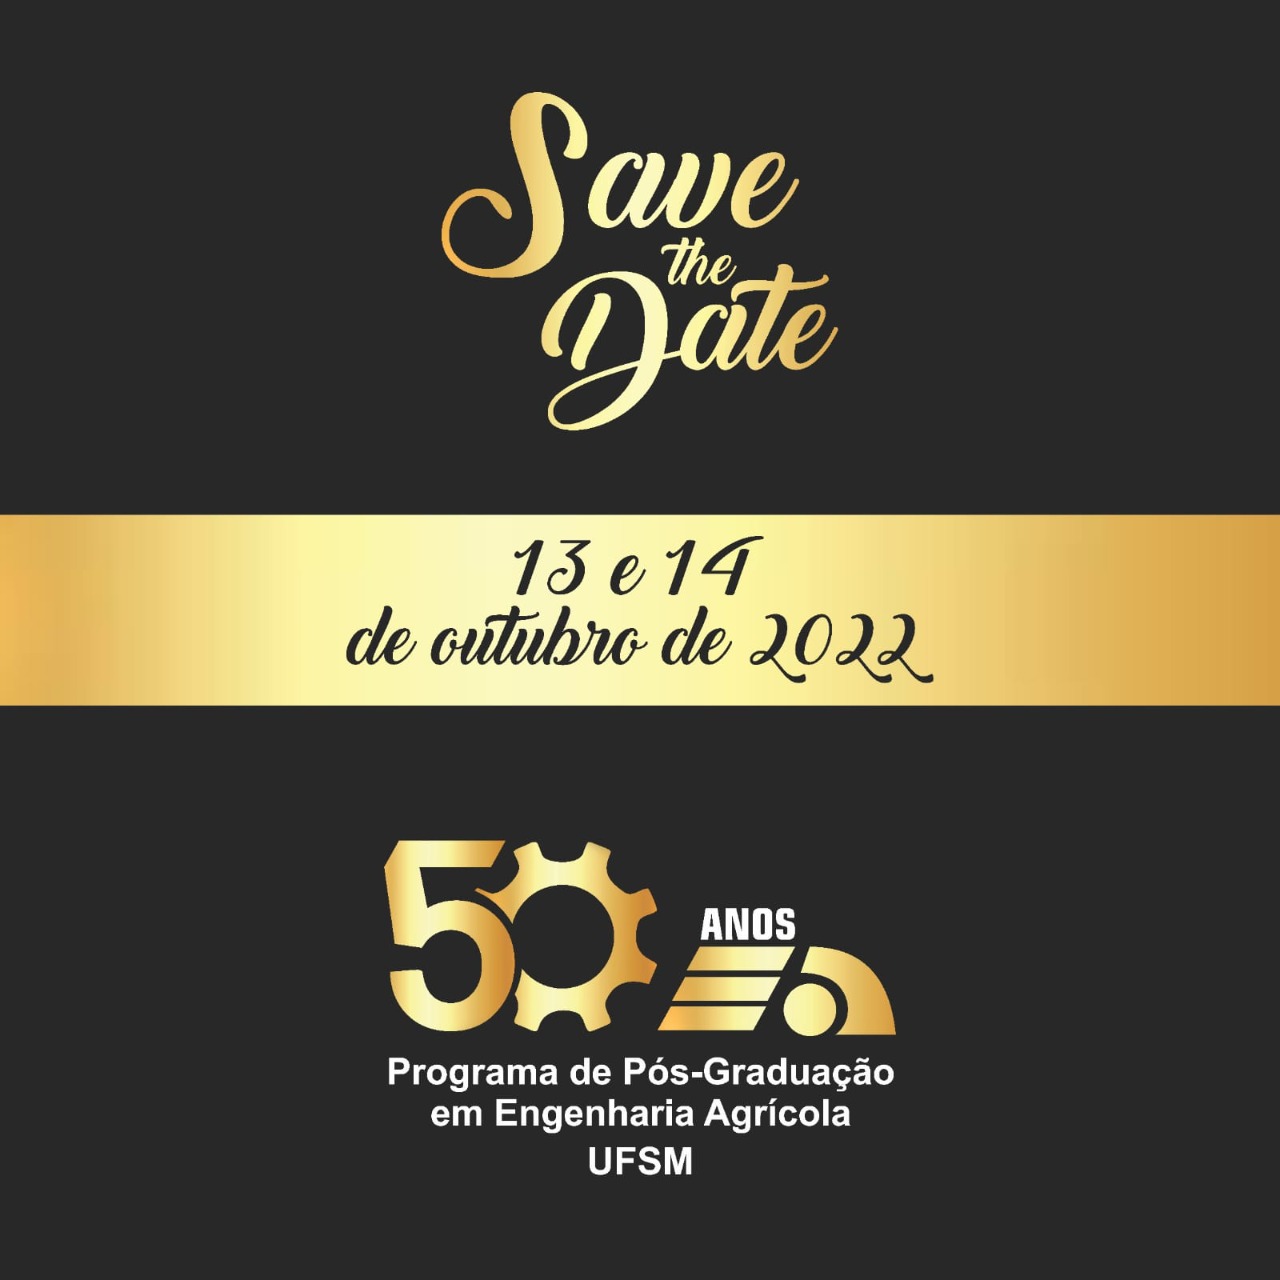 Imagem. quadrada, colorida. Convite para o evento de 50 anos do PPGEA. Fundo preto, com uma faixa dourada na horizontal no meio da imagem. Em letras douradas estão as datas do evento.